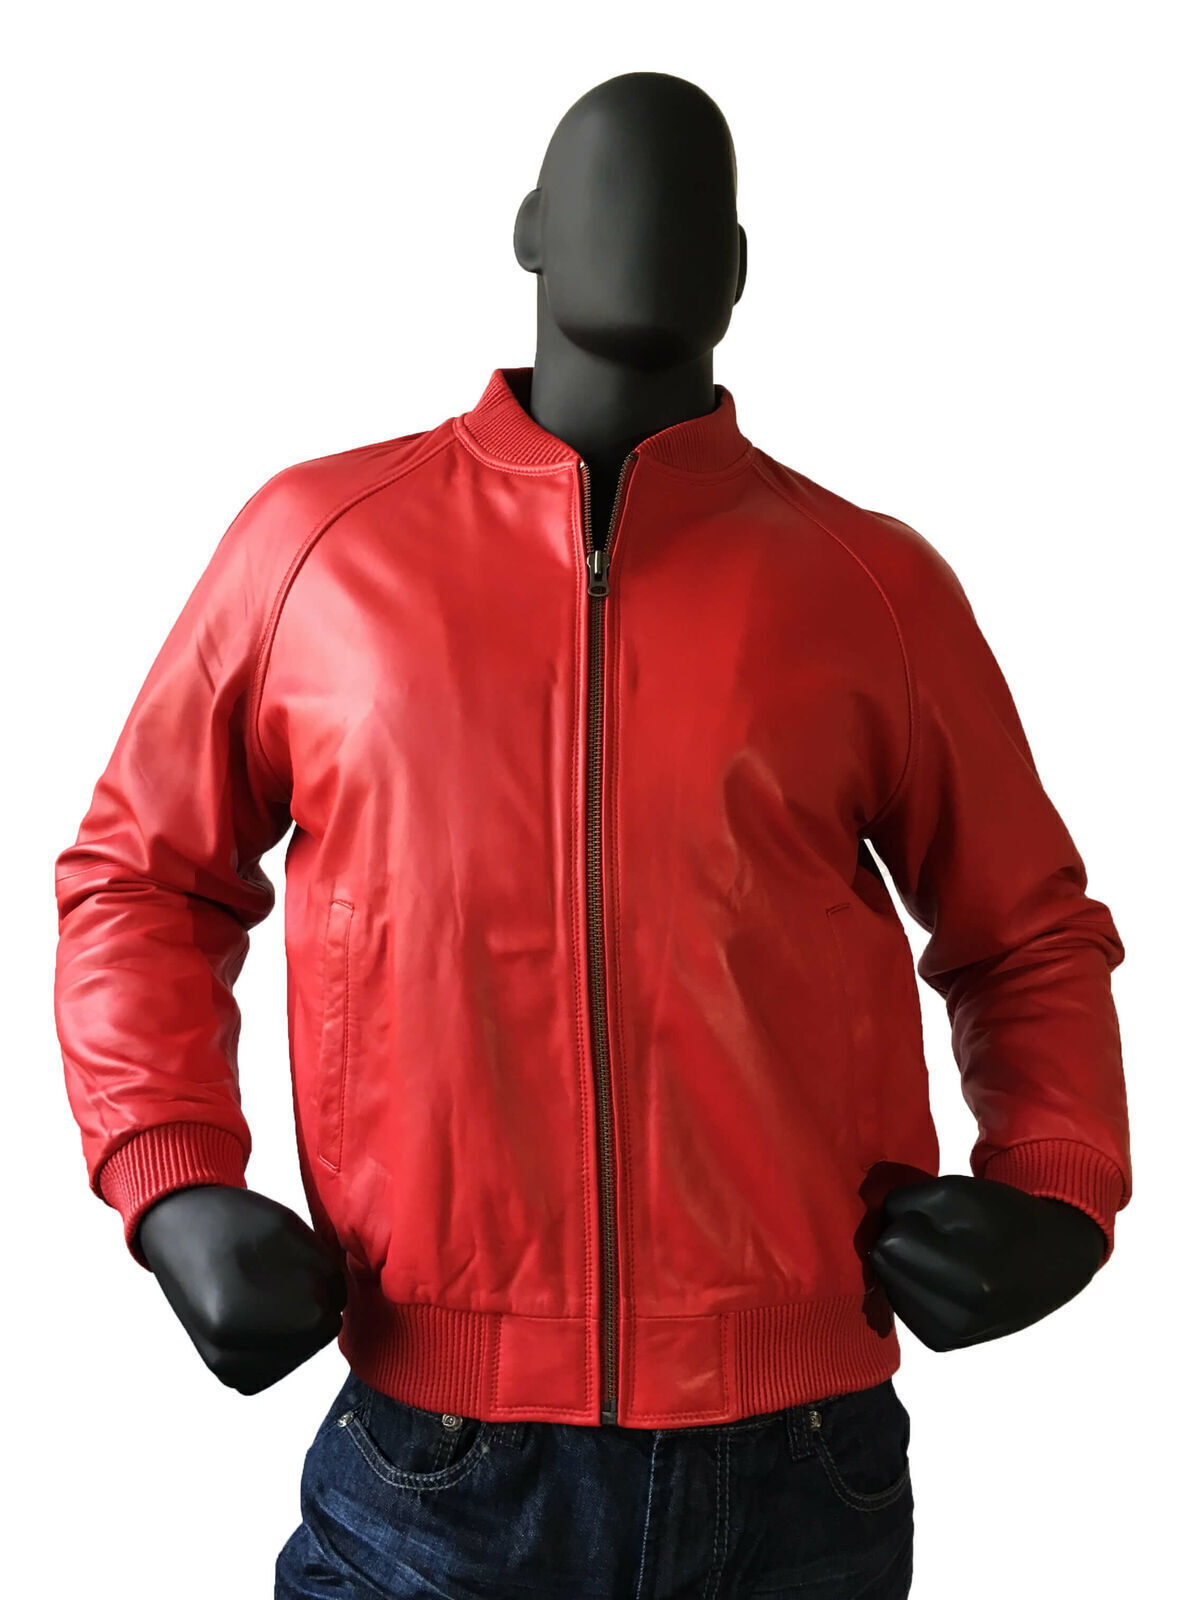 Men\'s Genuine Lambskin Leather Red Bomber Jacket Baseball Varsity Style Jacket